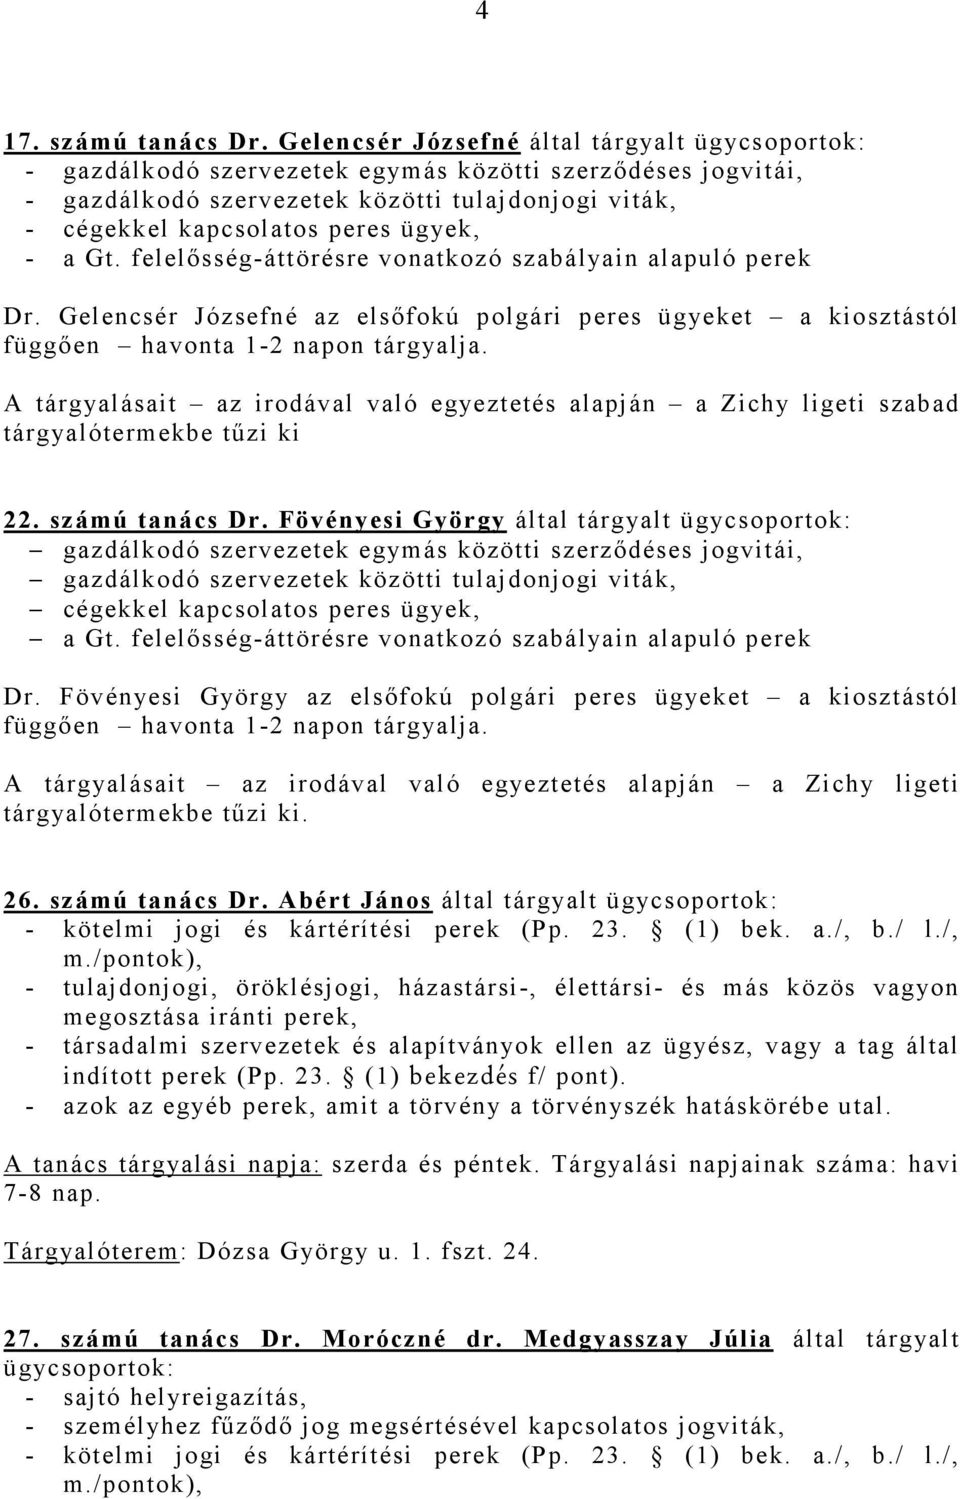 - a Gt. felelısség-áttörésre vonatkozó szabályain alapuló perek Dr. Gelencsér Józsefné az elsıfokú polgári peres ügyeket a kiosztástól függıen havonta 1-2 napon tárgyalja.